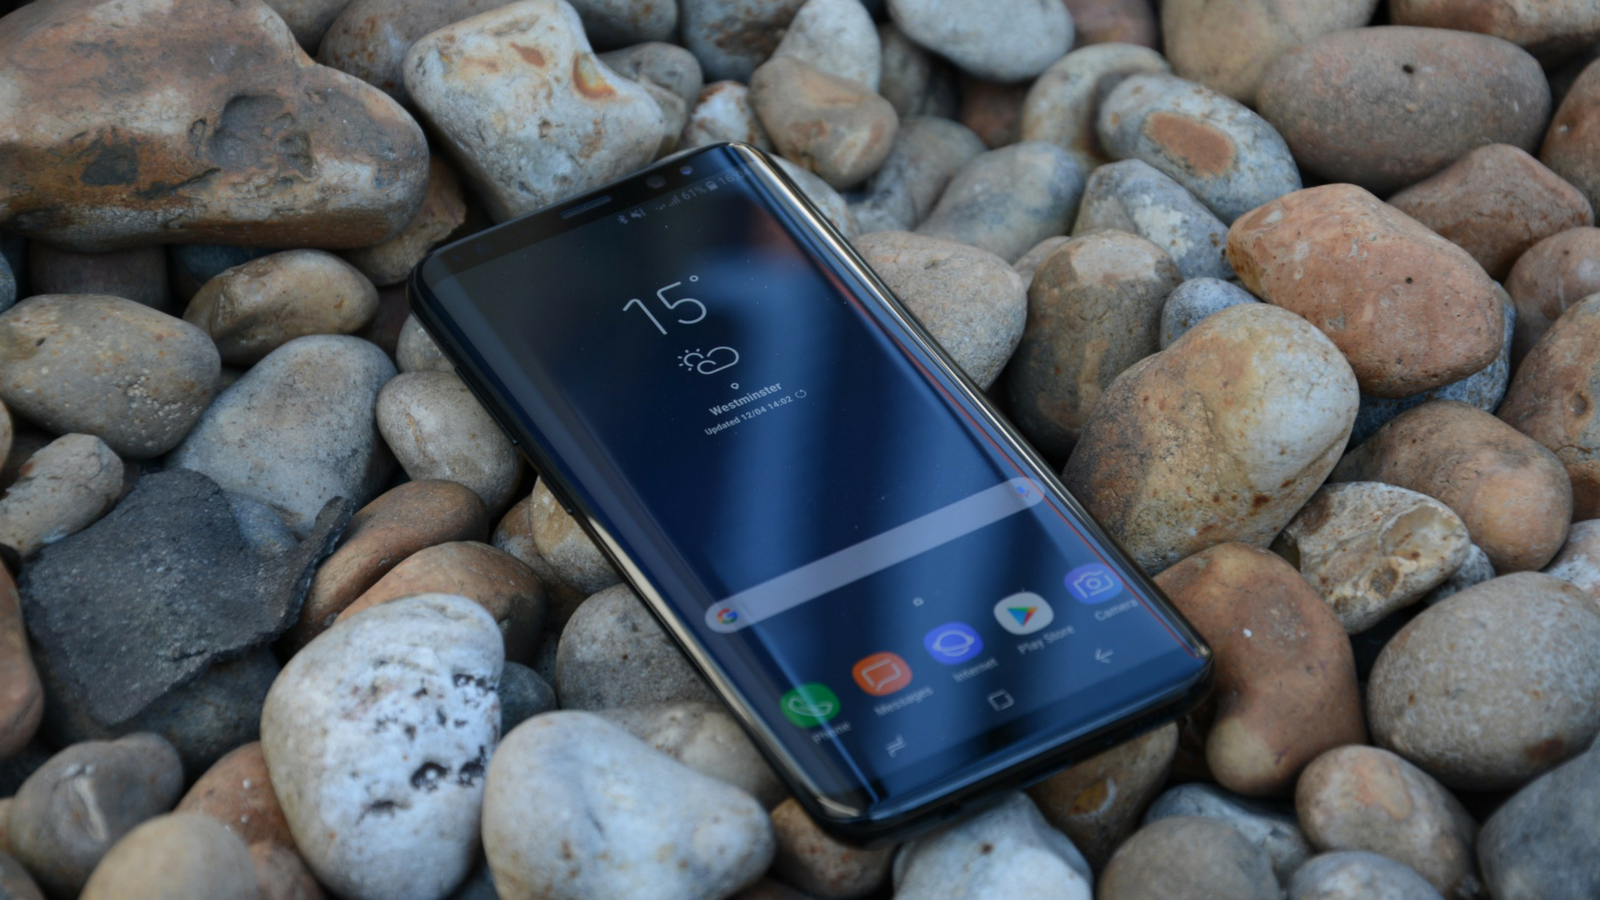 Предупреждение о сделке: Samsung Galaxy S8 идет дешево